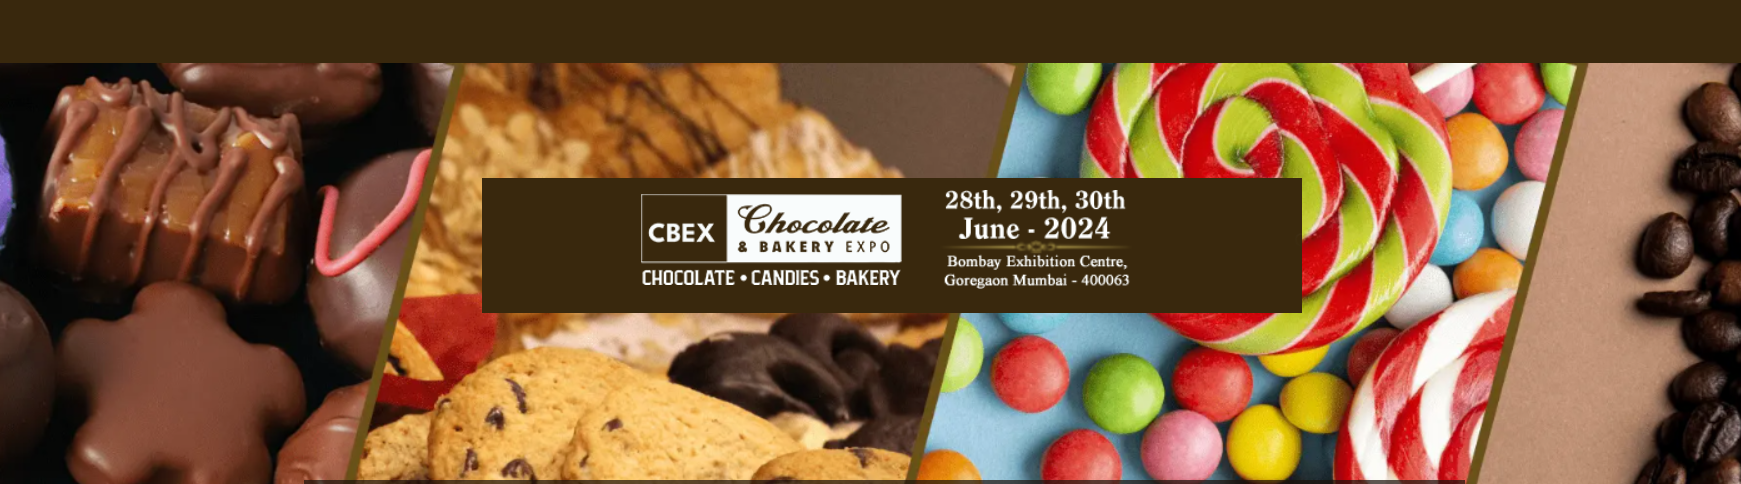 CHOCOLATE And BAKERY EXPO CBEX India - Mumbai